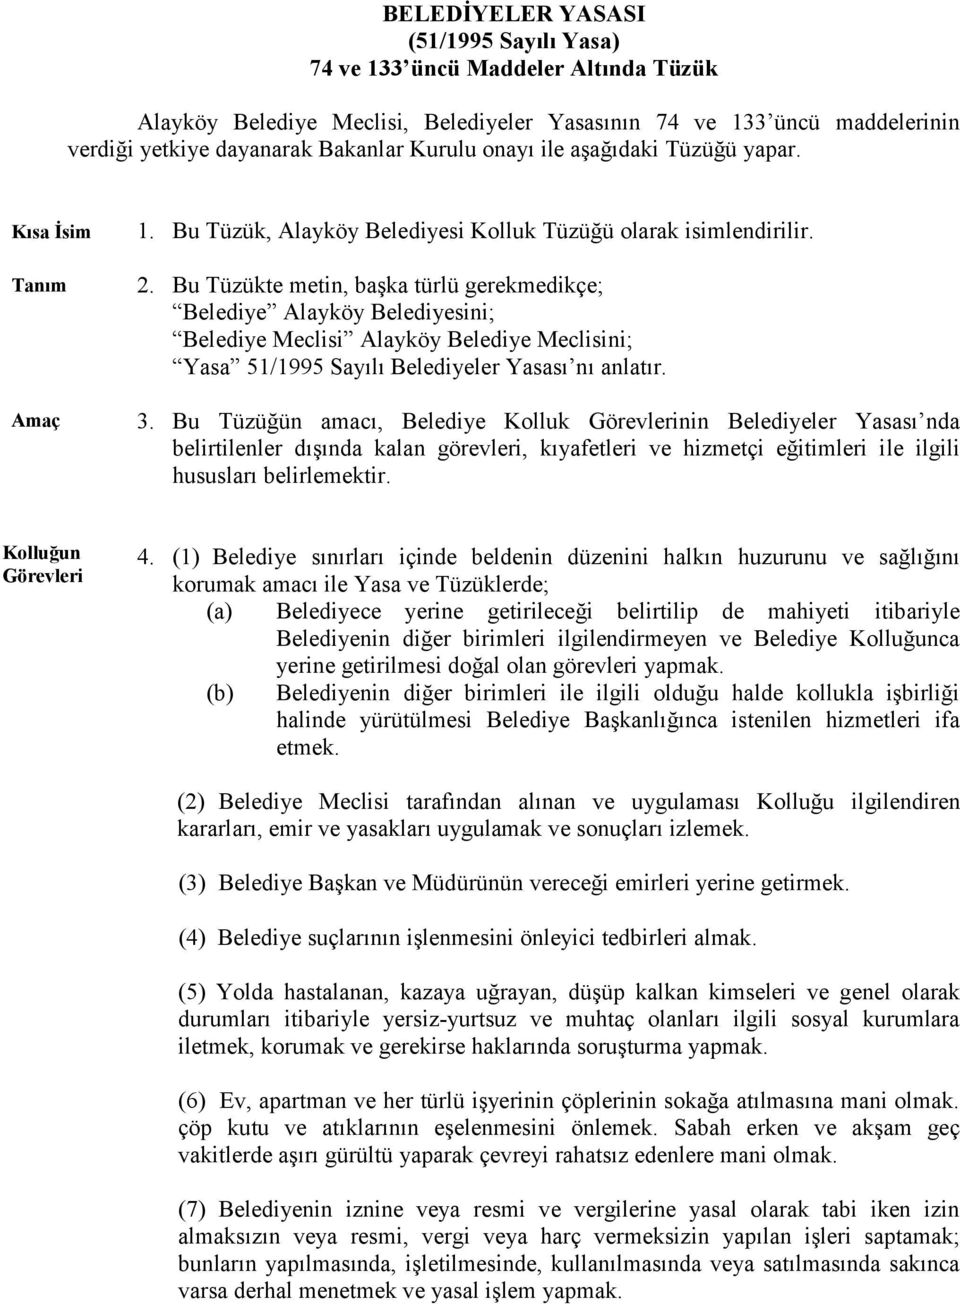 Bu Tüzükte metin, başka türlü gerekmedikçe; Belediye Alayköy Belediyesini; Belediye Meclisi Alayköy Belediye Meclisini; Yasa 51/1995 Sayılı Belediyeler Yasası nı anlatır. 3.